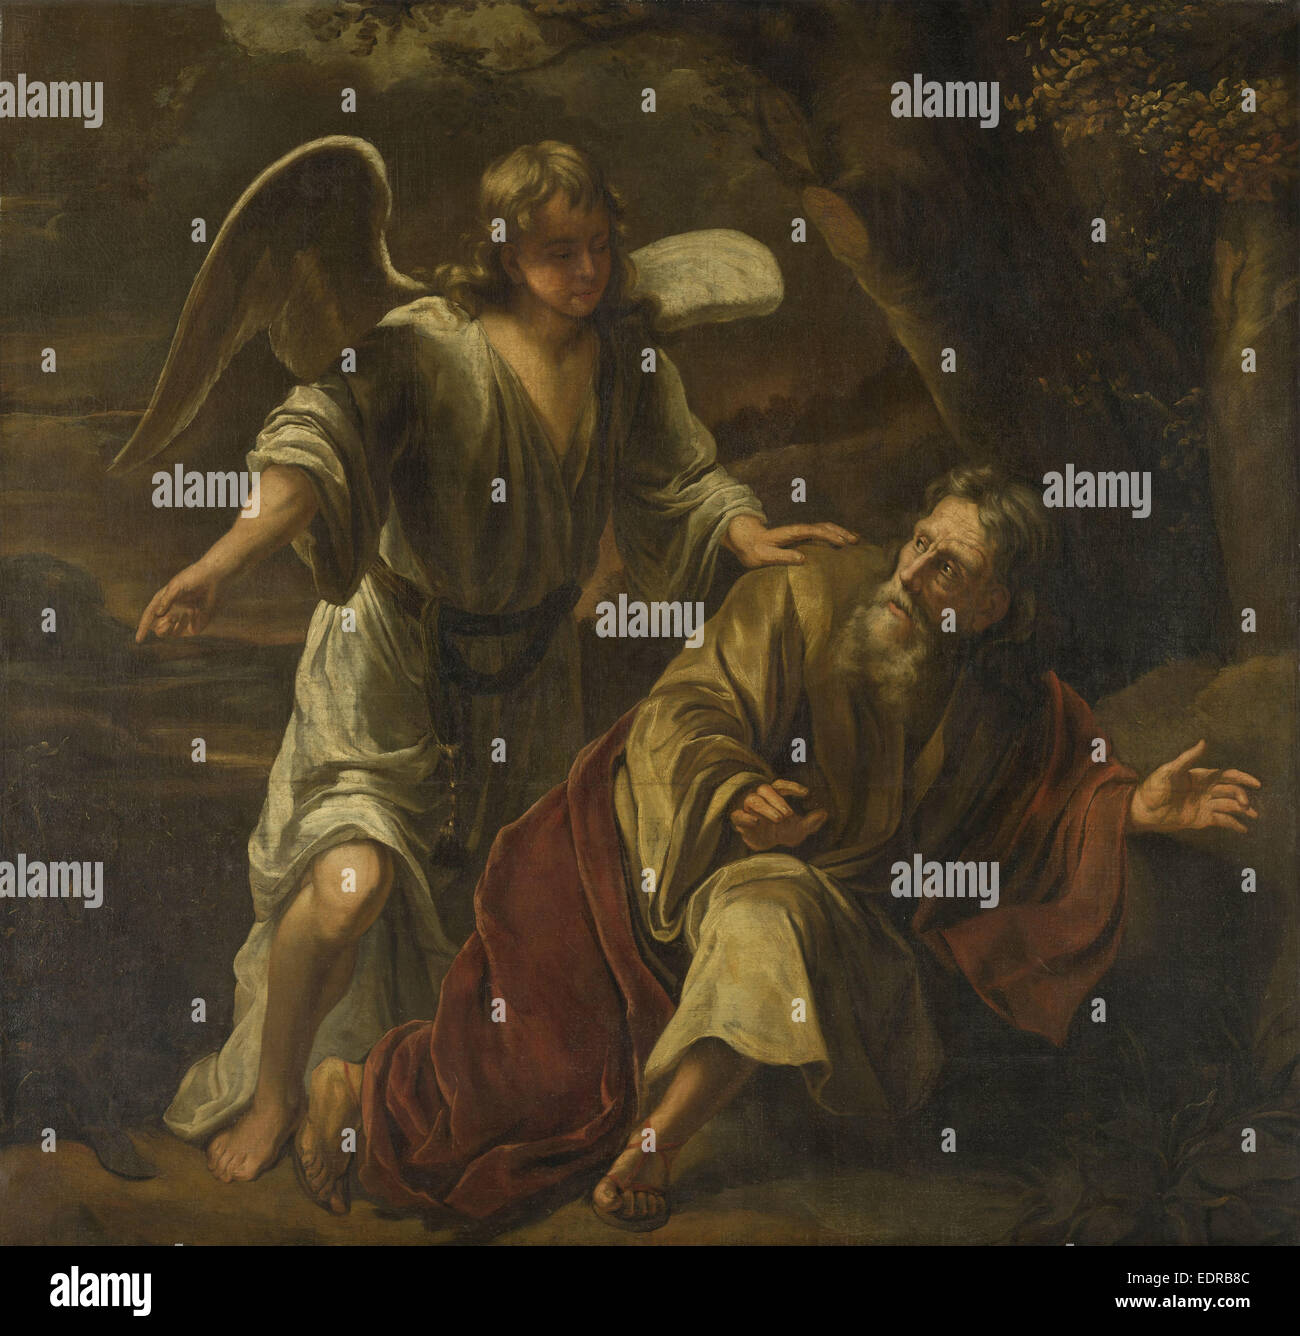 Biblische Szene, vielleicht der Prophet Elijah Visited von einem Engel zugeschrieben Ferdinand Bol, c. 1645 - c. 1669 Stockfoto